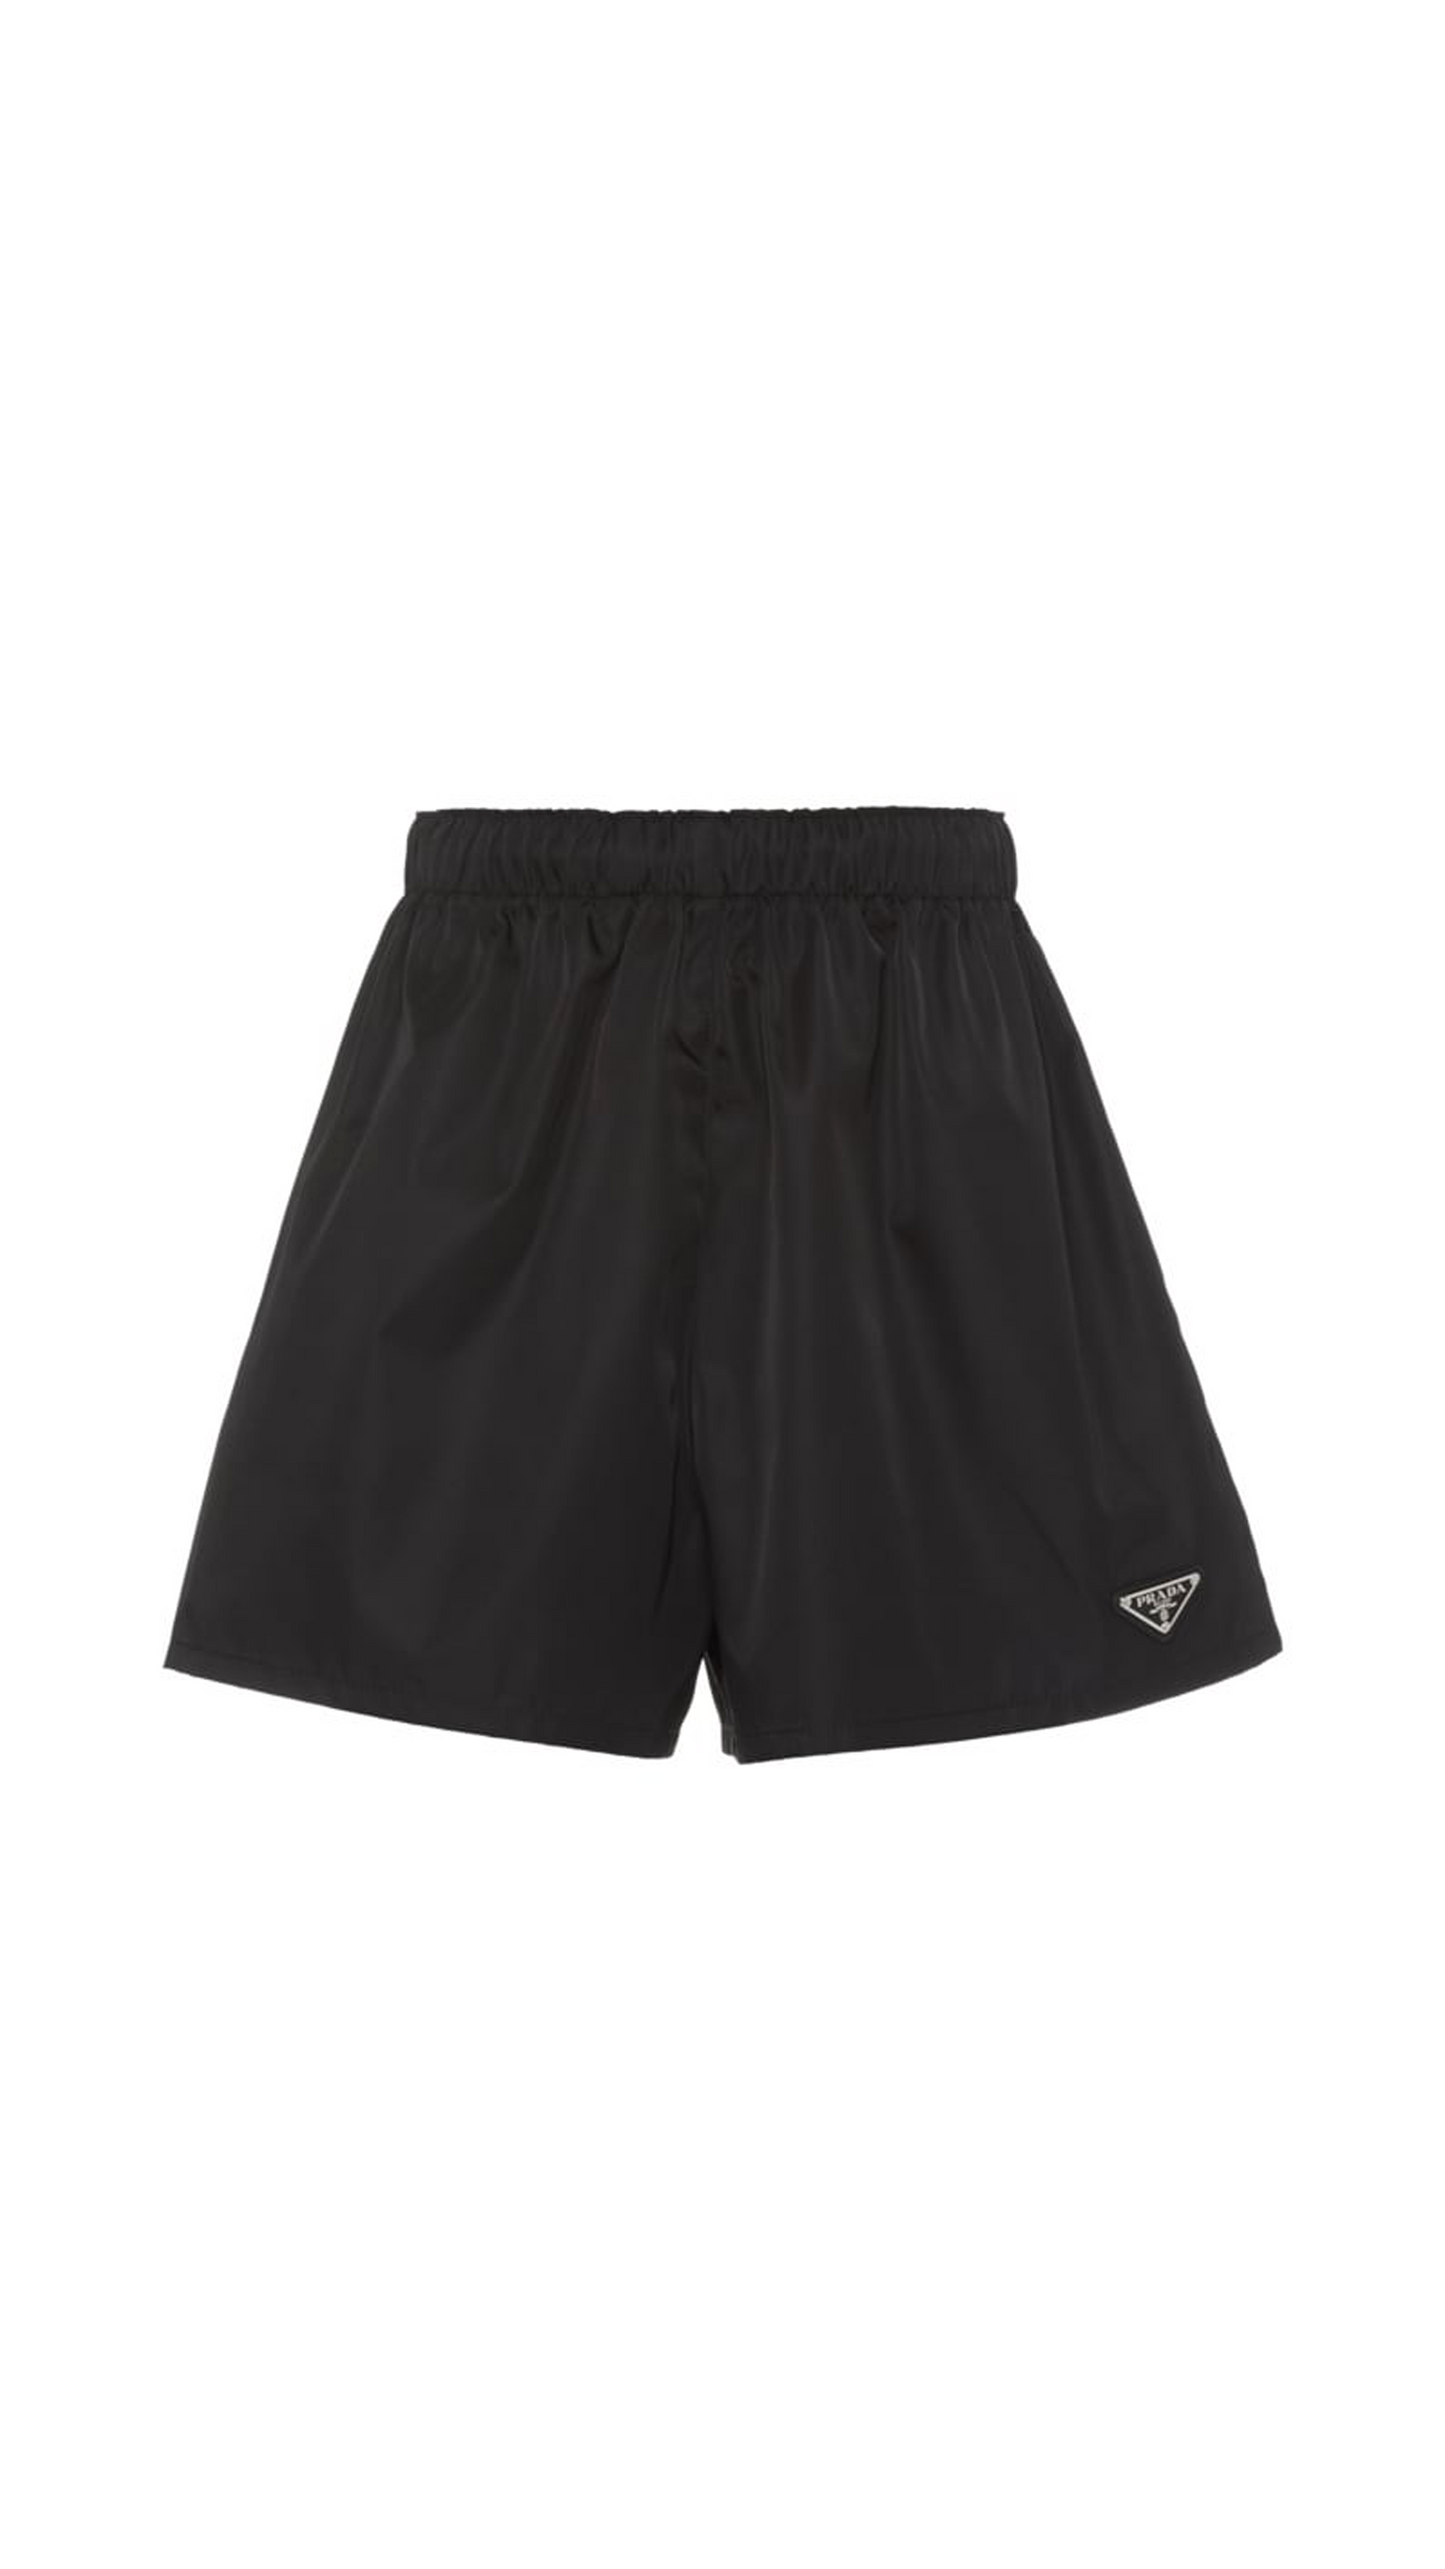 Re-Nylon Shorts - Black